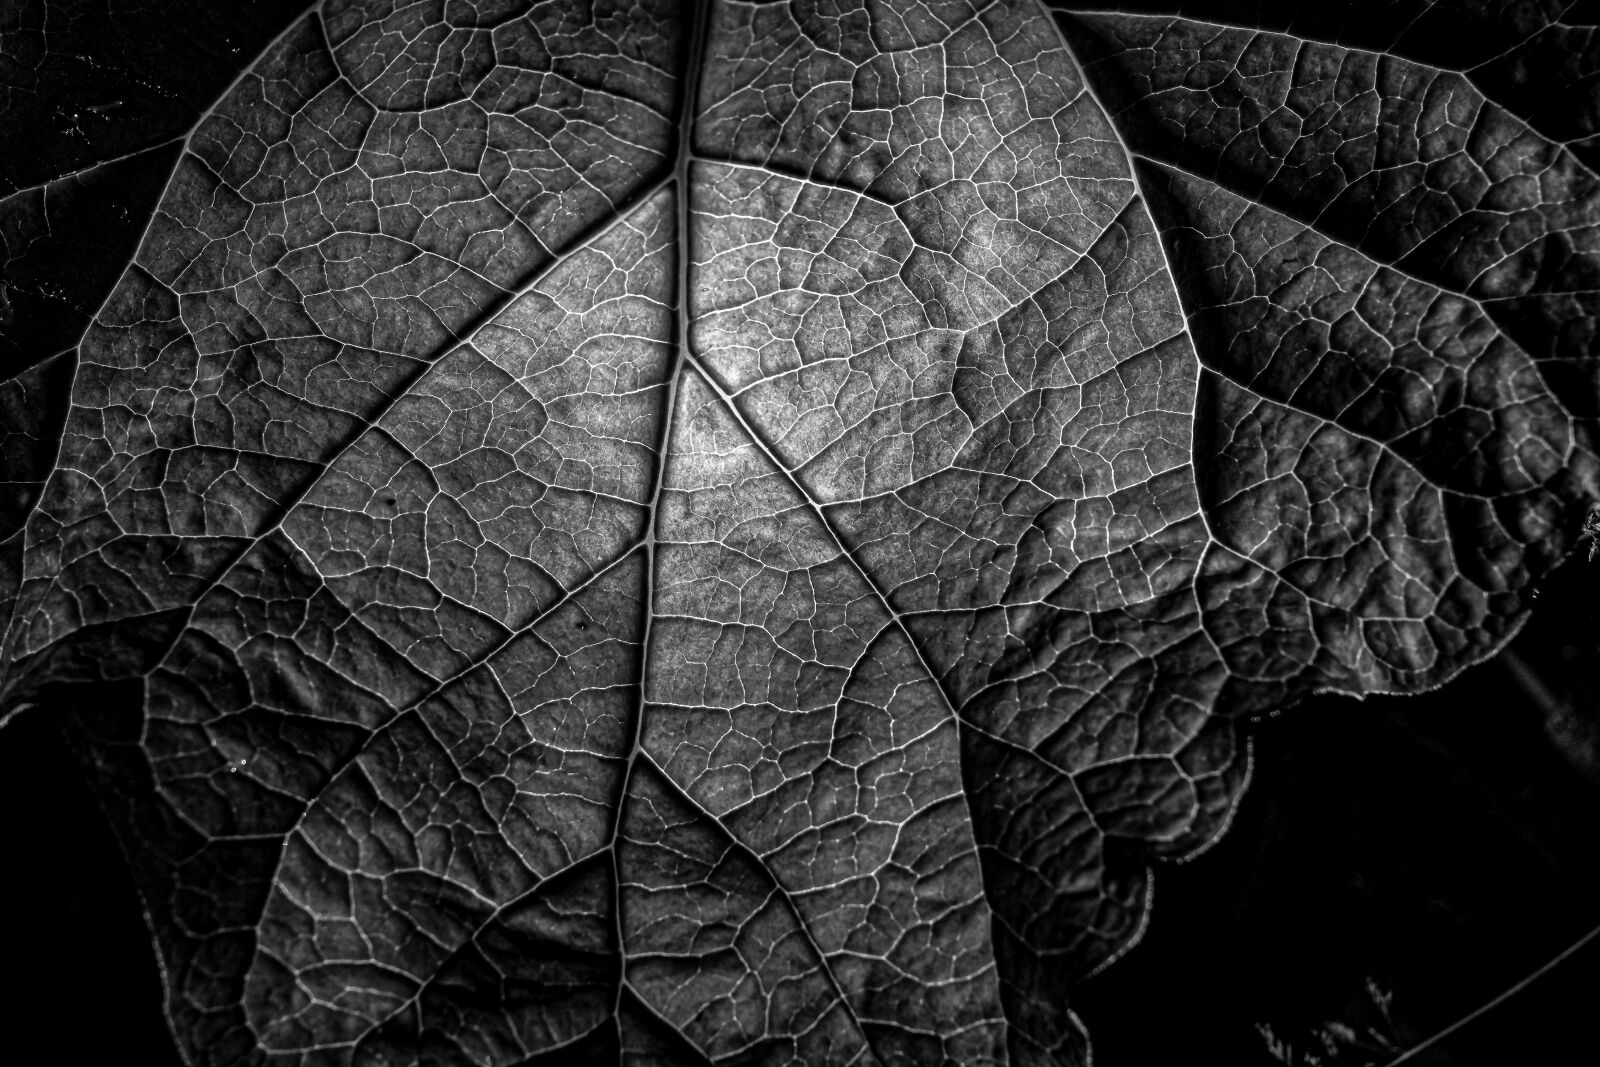 Nikon Z7 + Nikon Nikkor Z 24-70mm F4 S sample photo. Leaf, autumn, texture photography